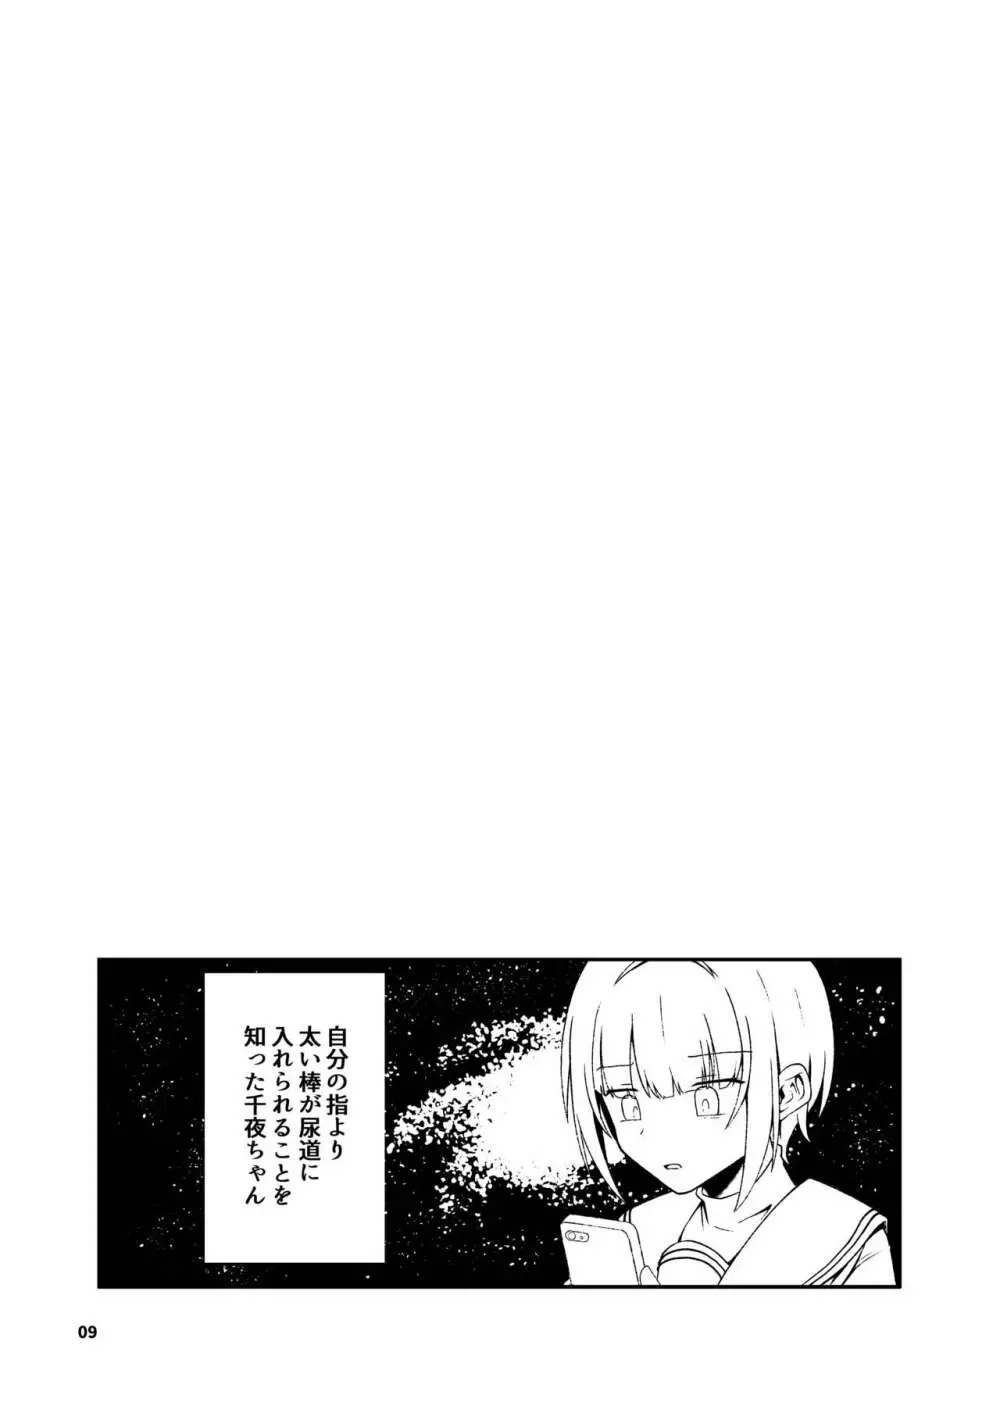 黒埼ちとせエッチ漫画まとめ本 - page10